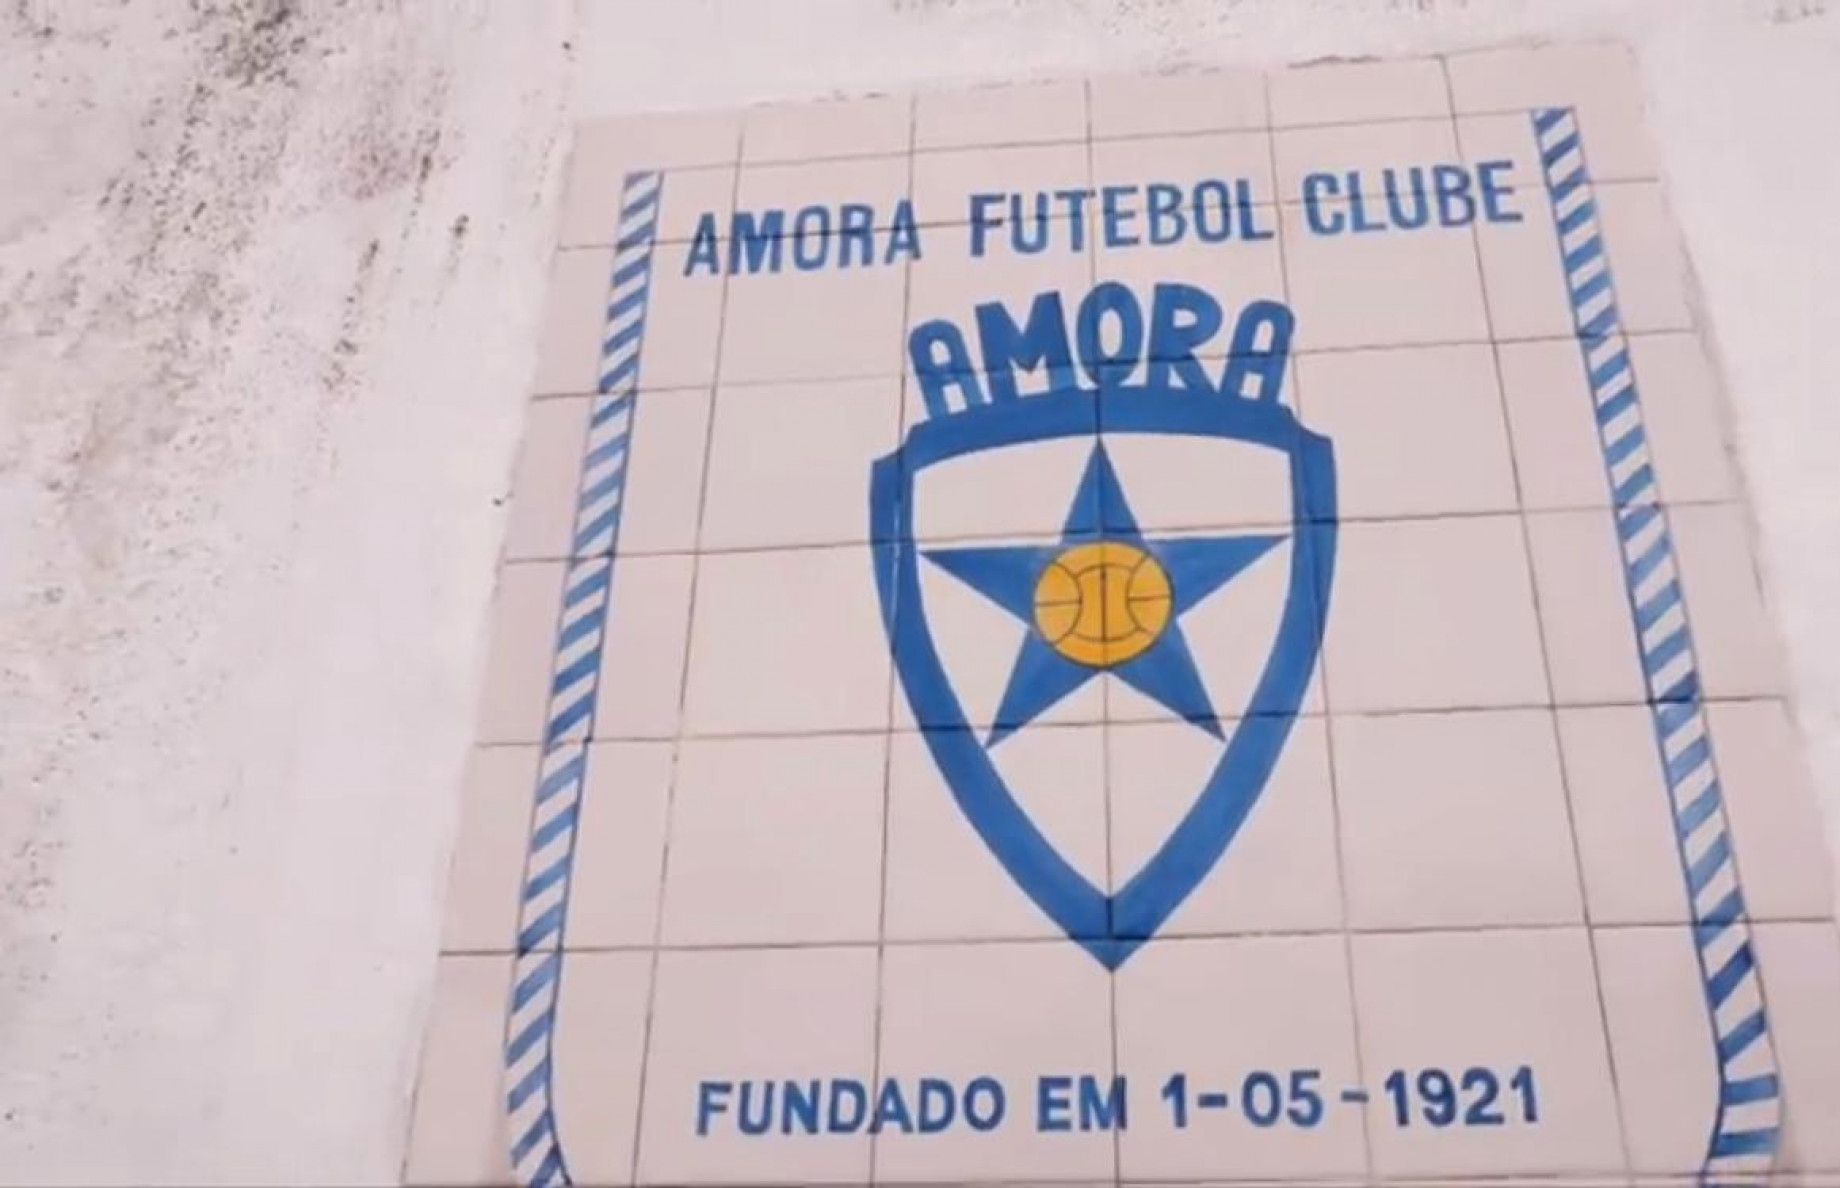 Amora_futebol_clube_SCREEN.jpg